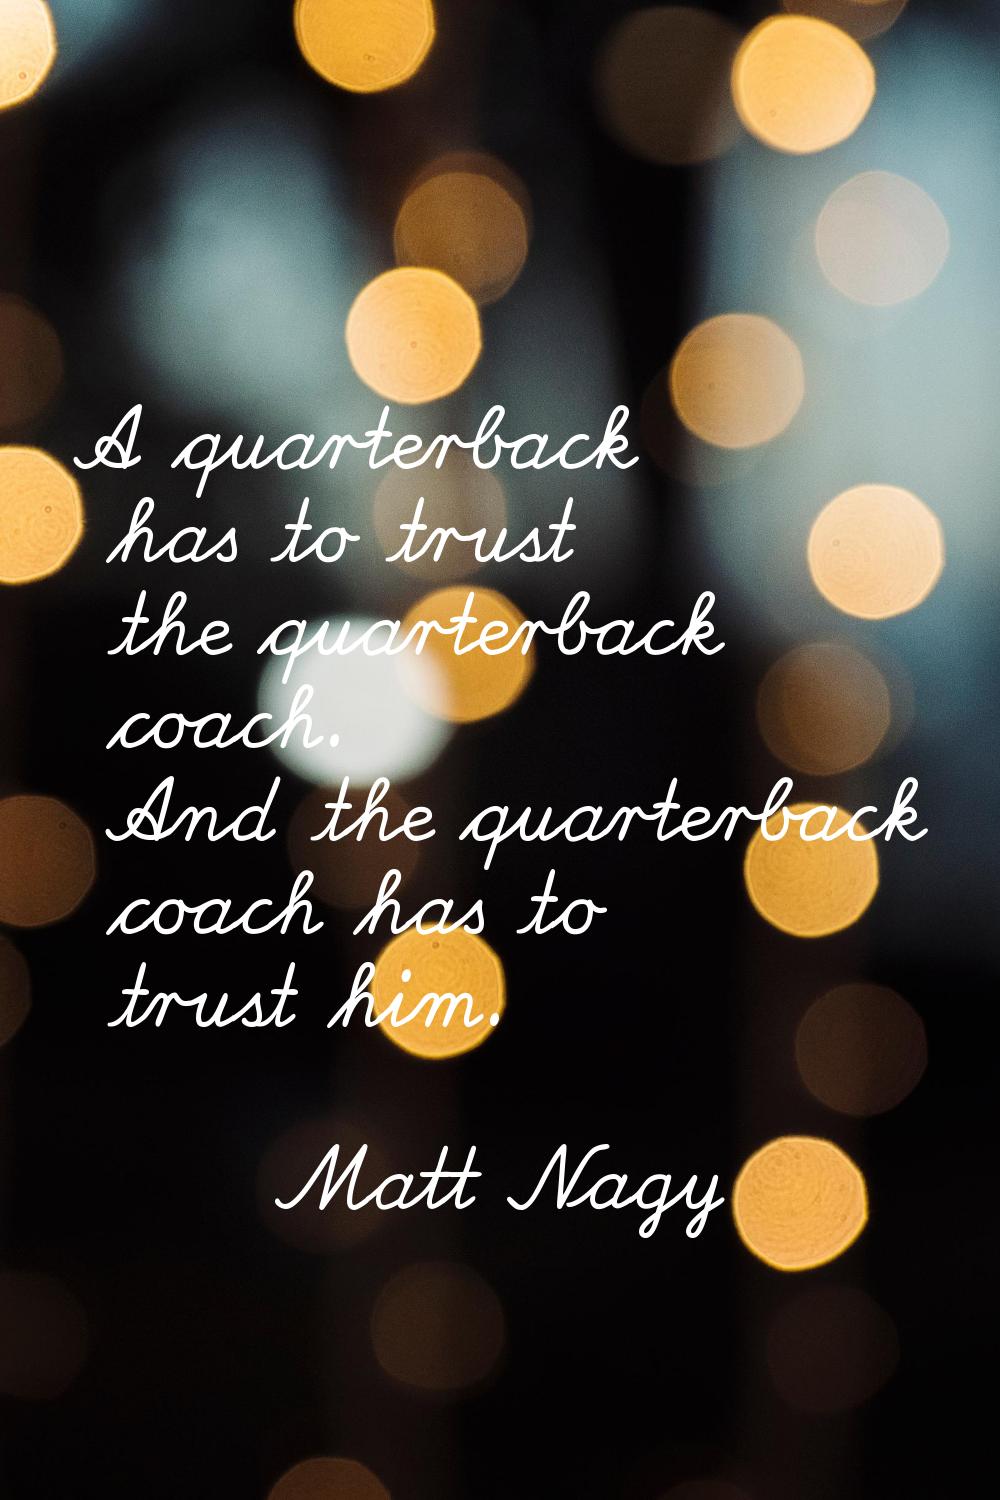 A quarterback has to trust the quarterback coach. And the quarterback coach has to trust him.